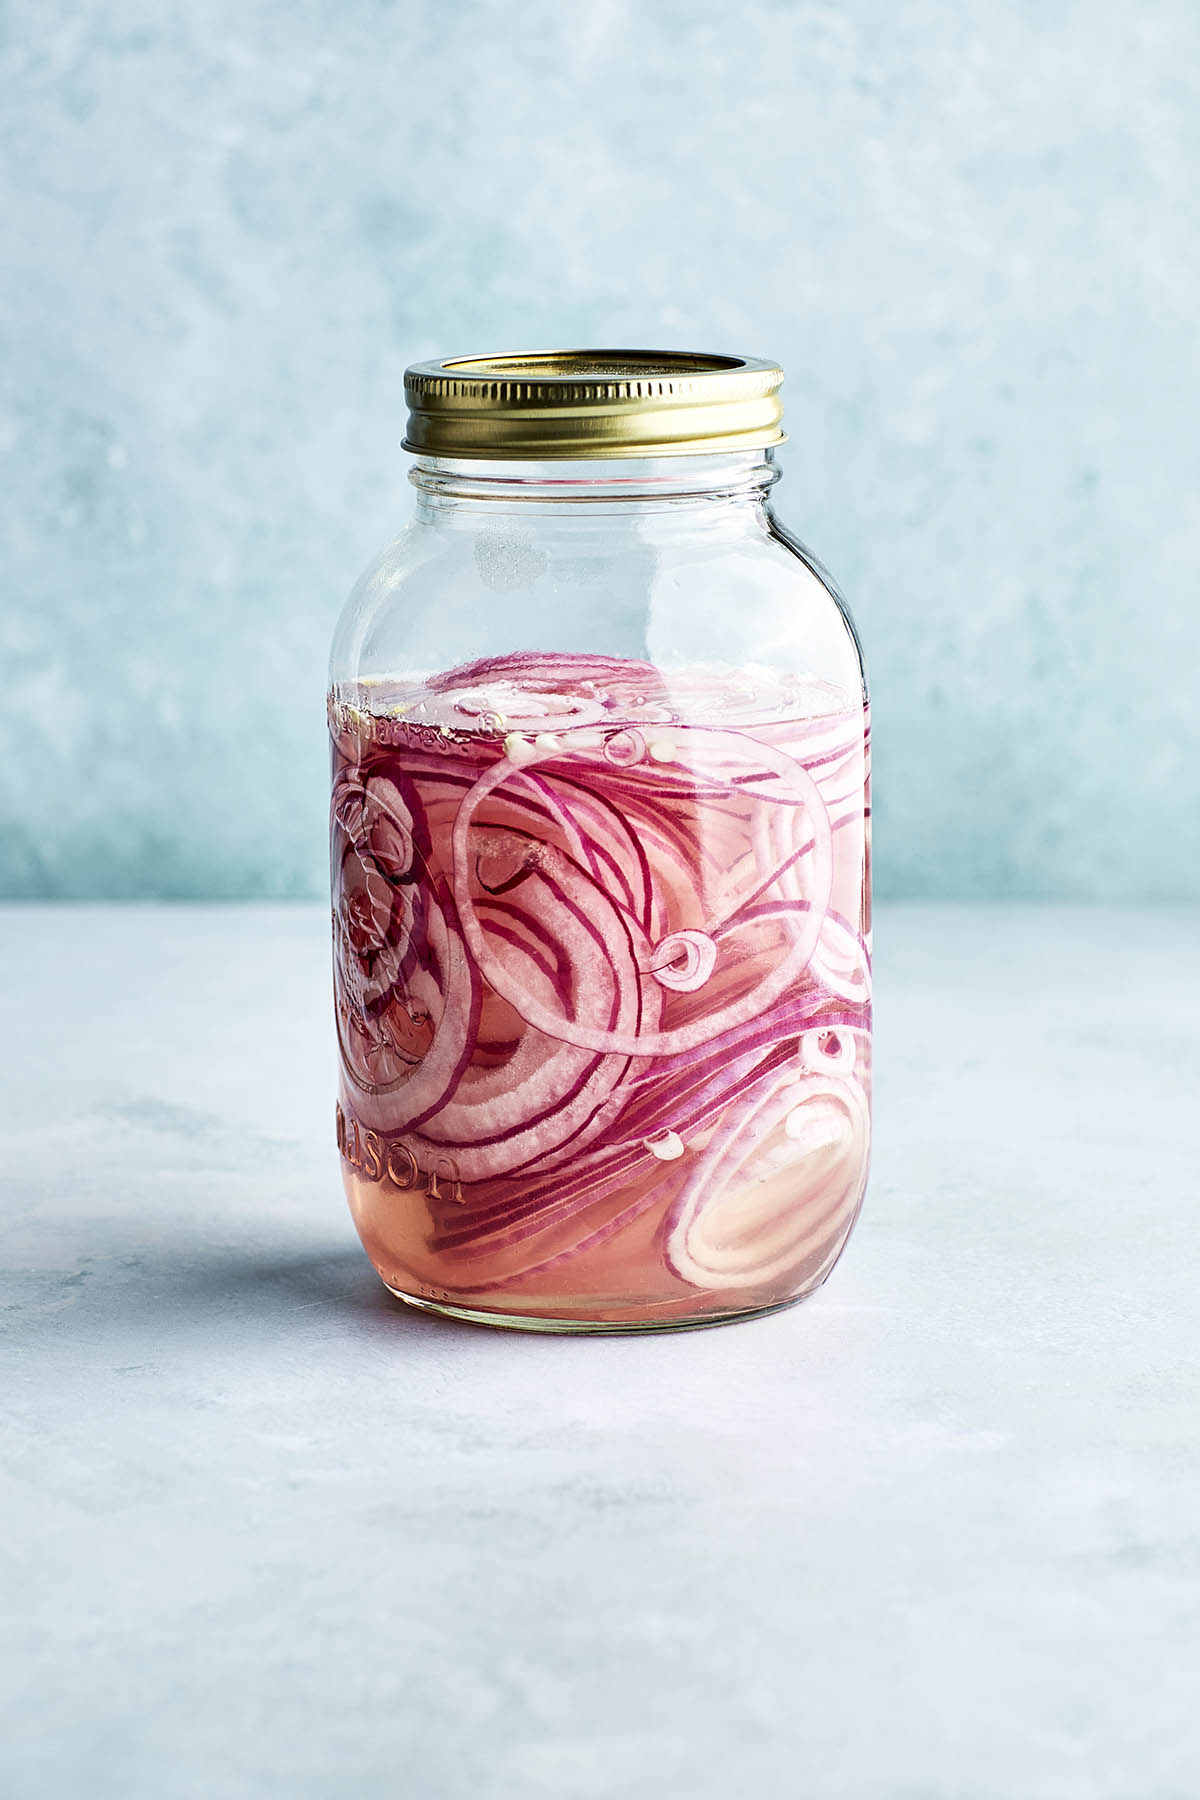 A jar of onions.